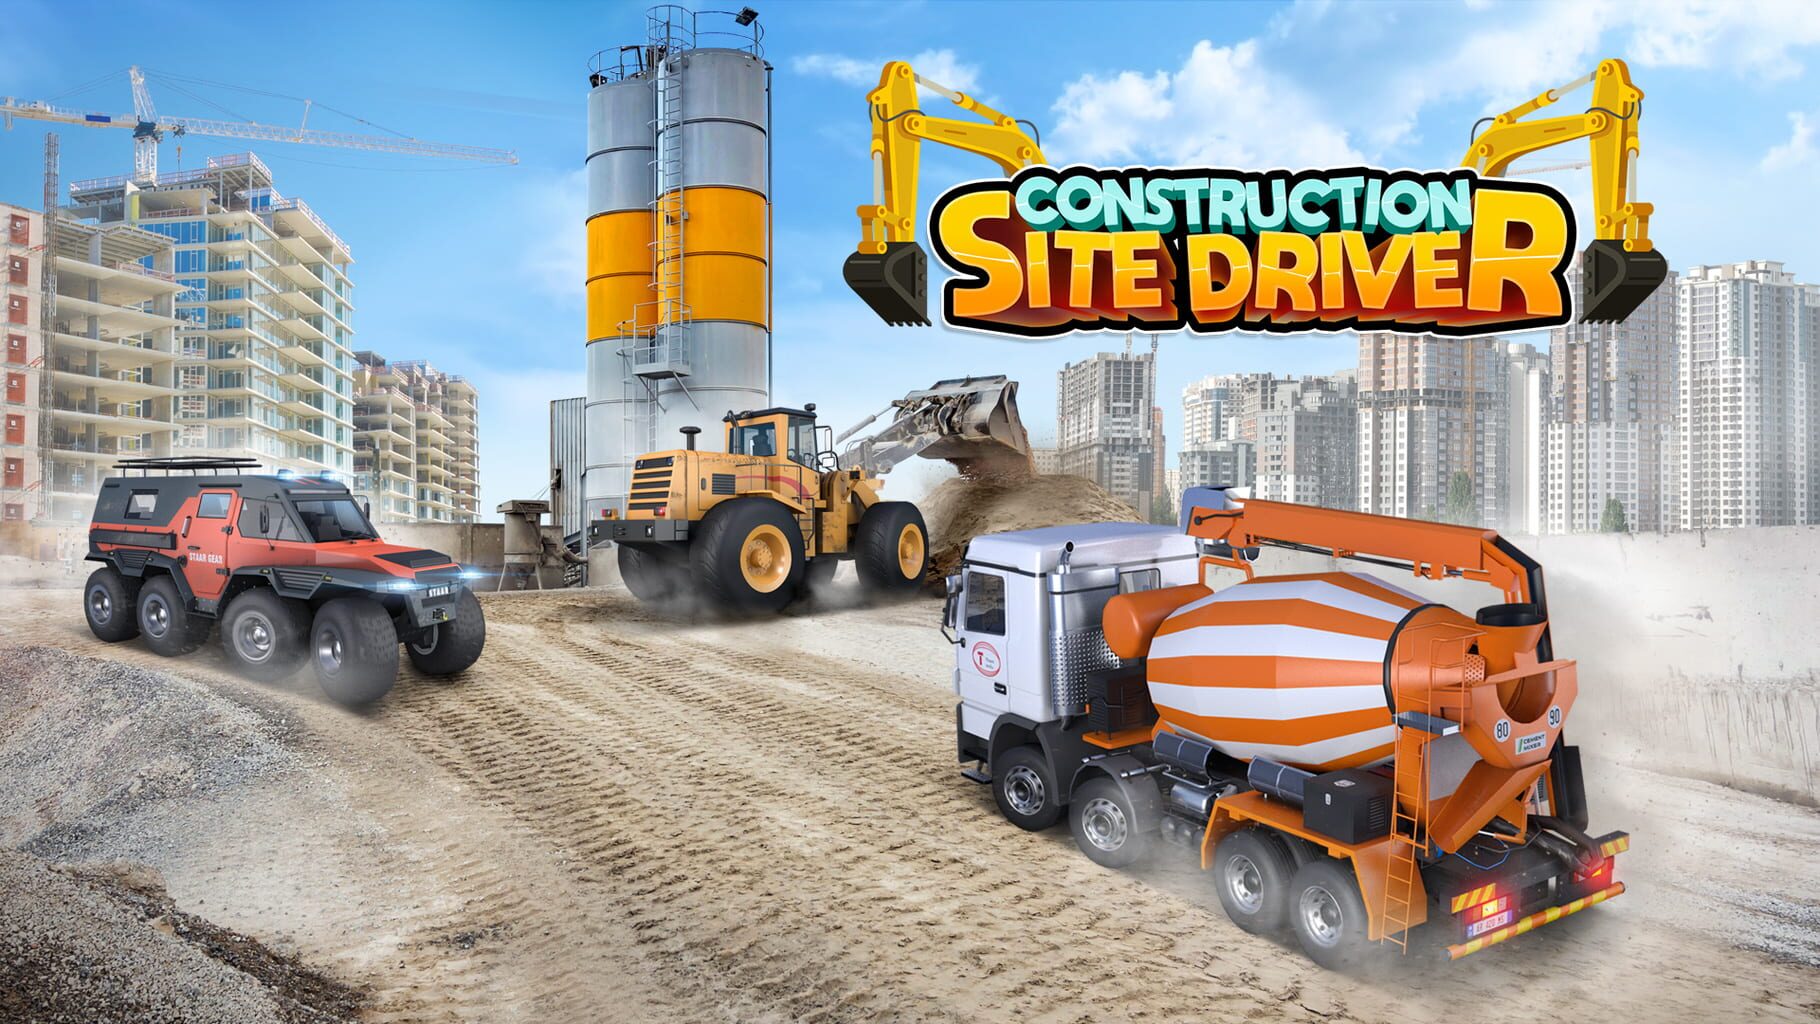 Construction Site Driver artwork